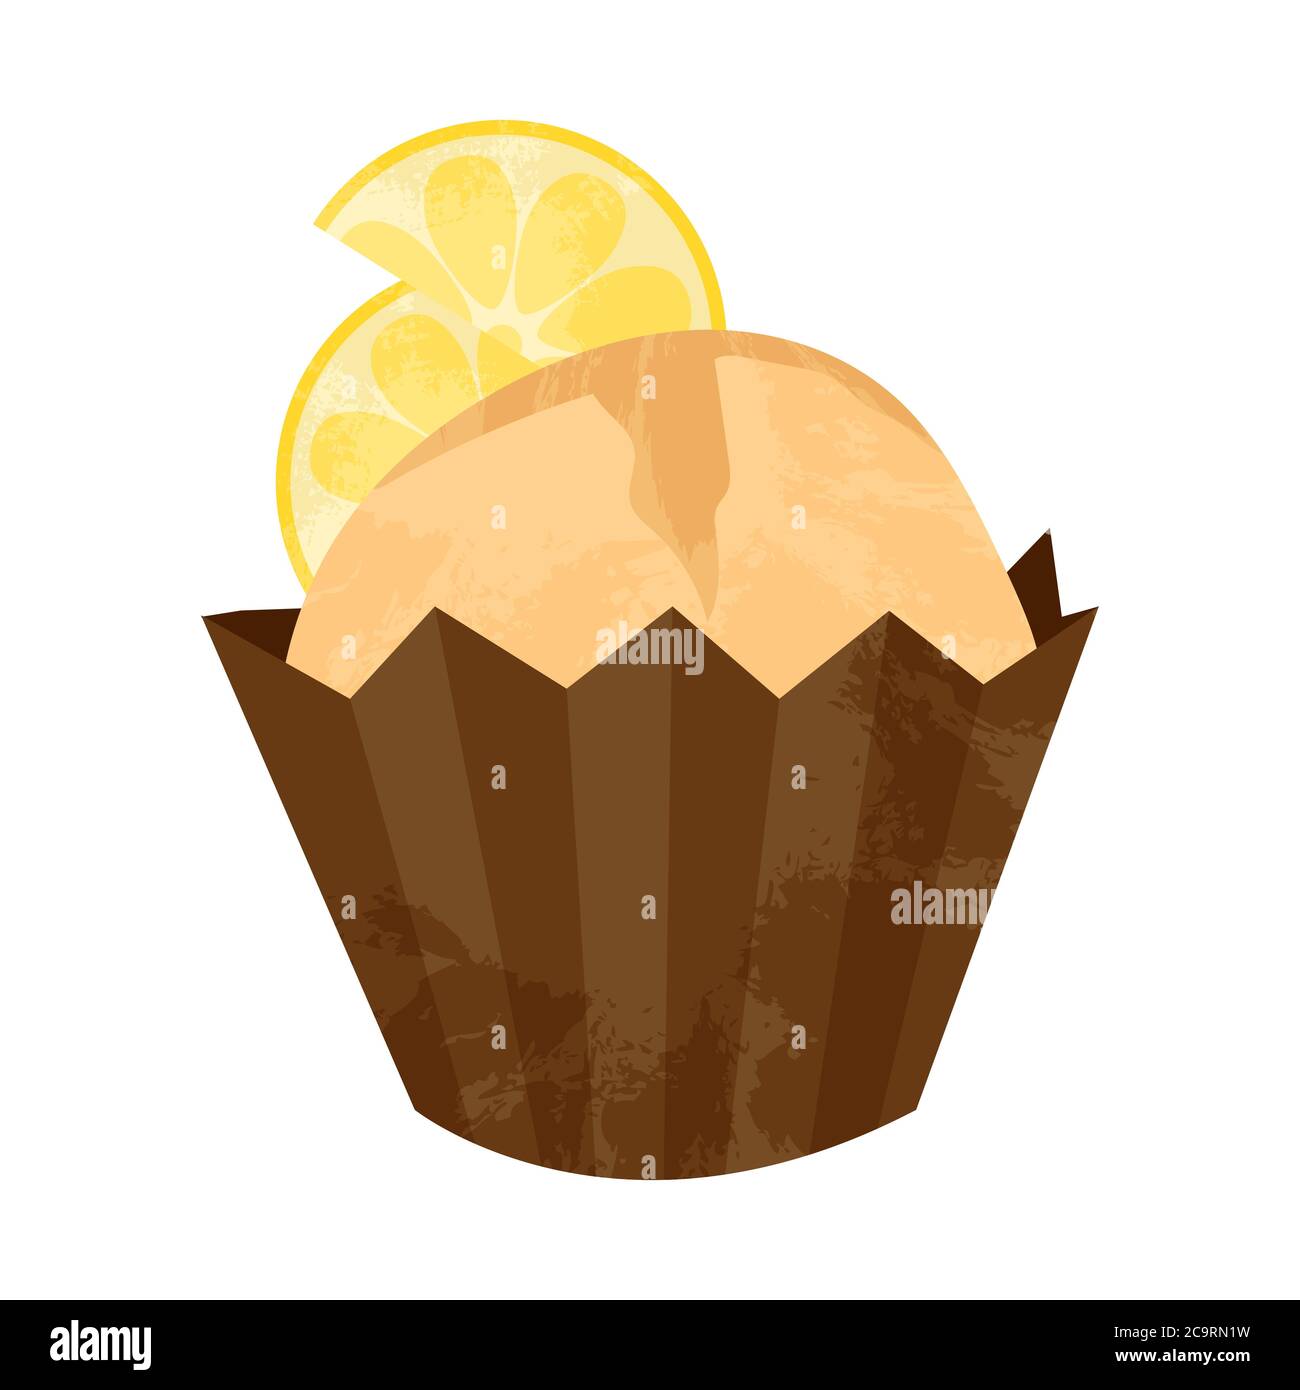 Einhandgezogener Cupcake oder Muffin mit Zitrone. Vektor-Cartoon-Illustration in flachem Design. Element für Grußkarten, Poster, Aufkleber und saisonale Stock Vektor